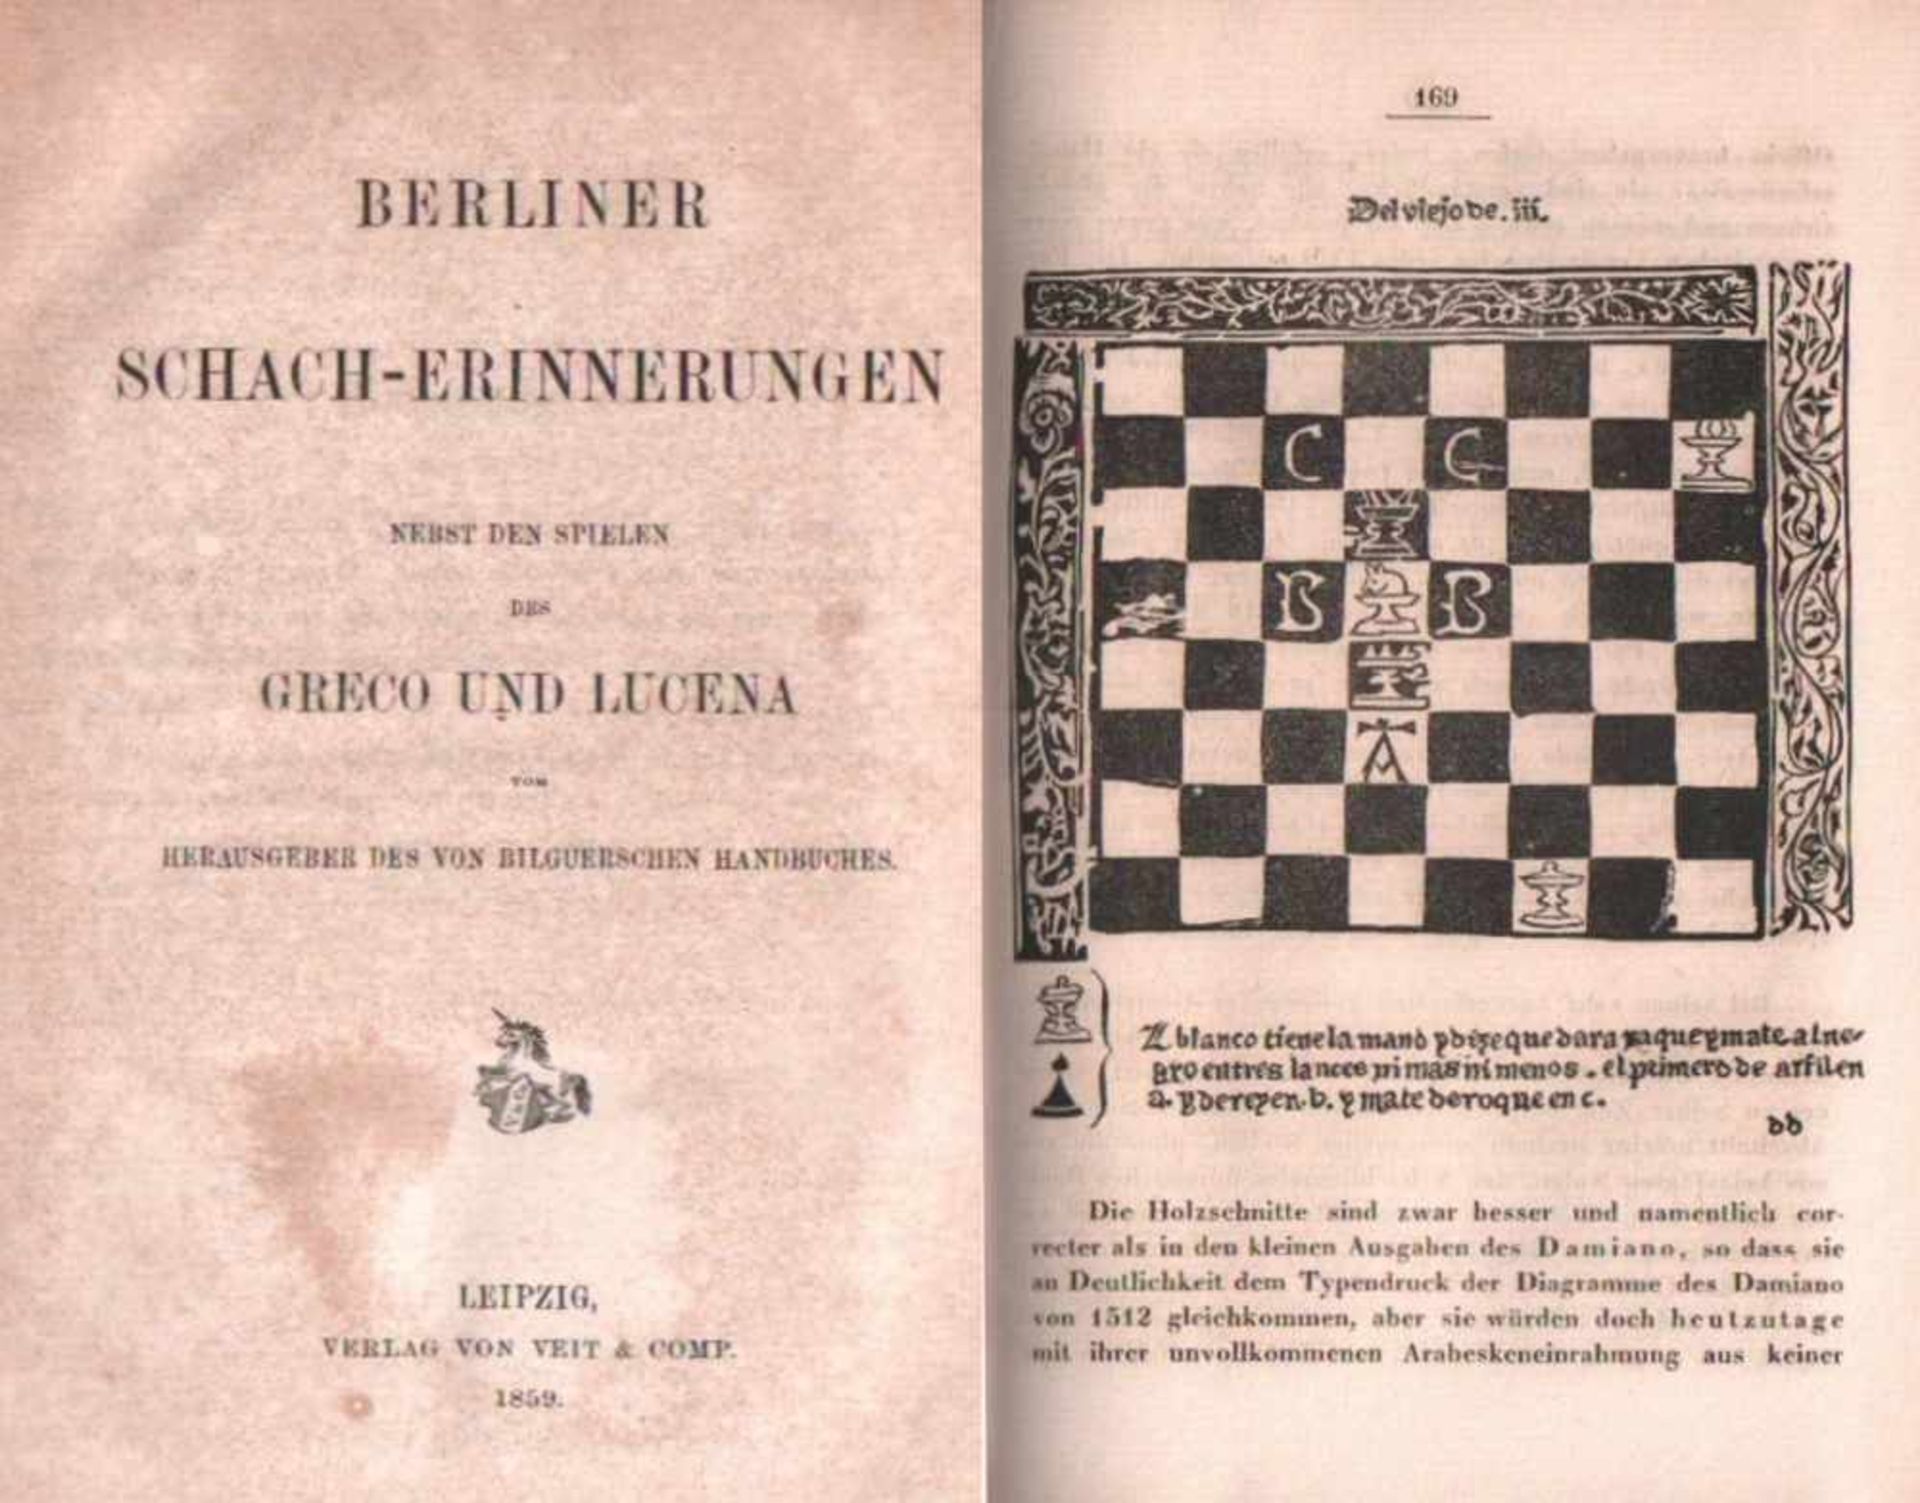 (Lasa, Thassilo von Heydebrand und der)Berliner Schach - Erinnerungen nebst den Spielen des Greco